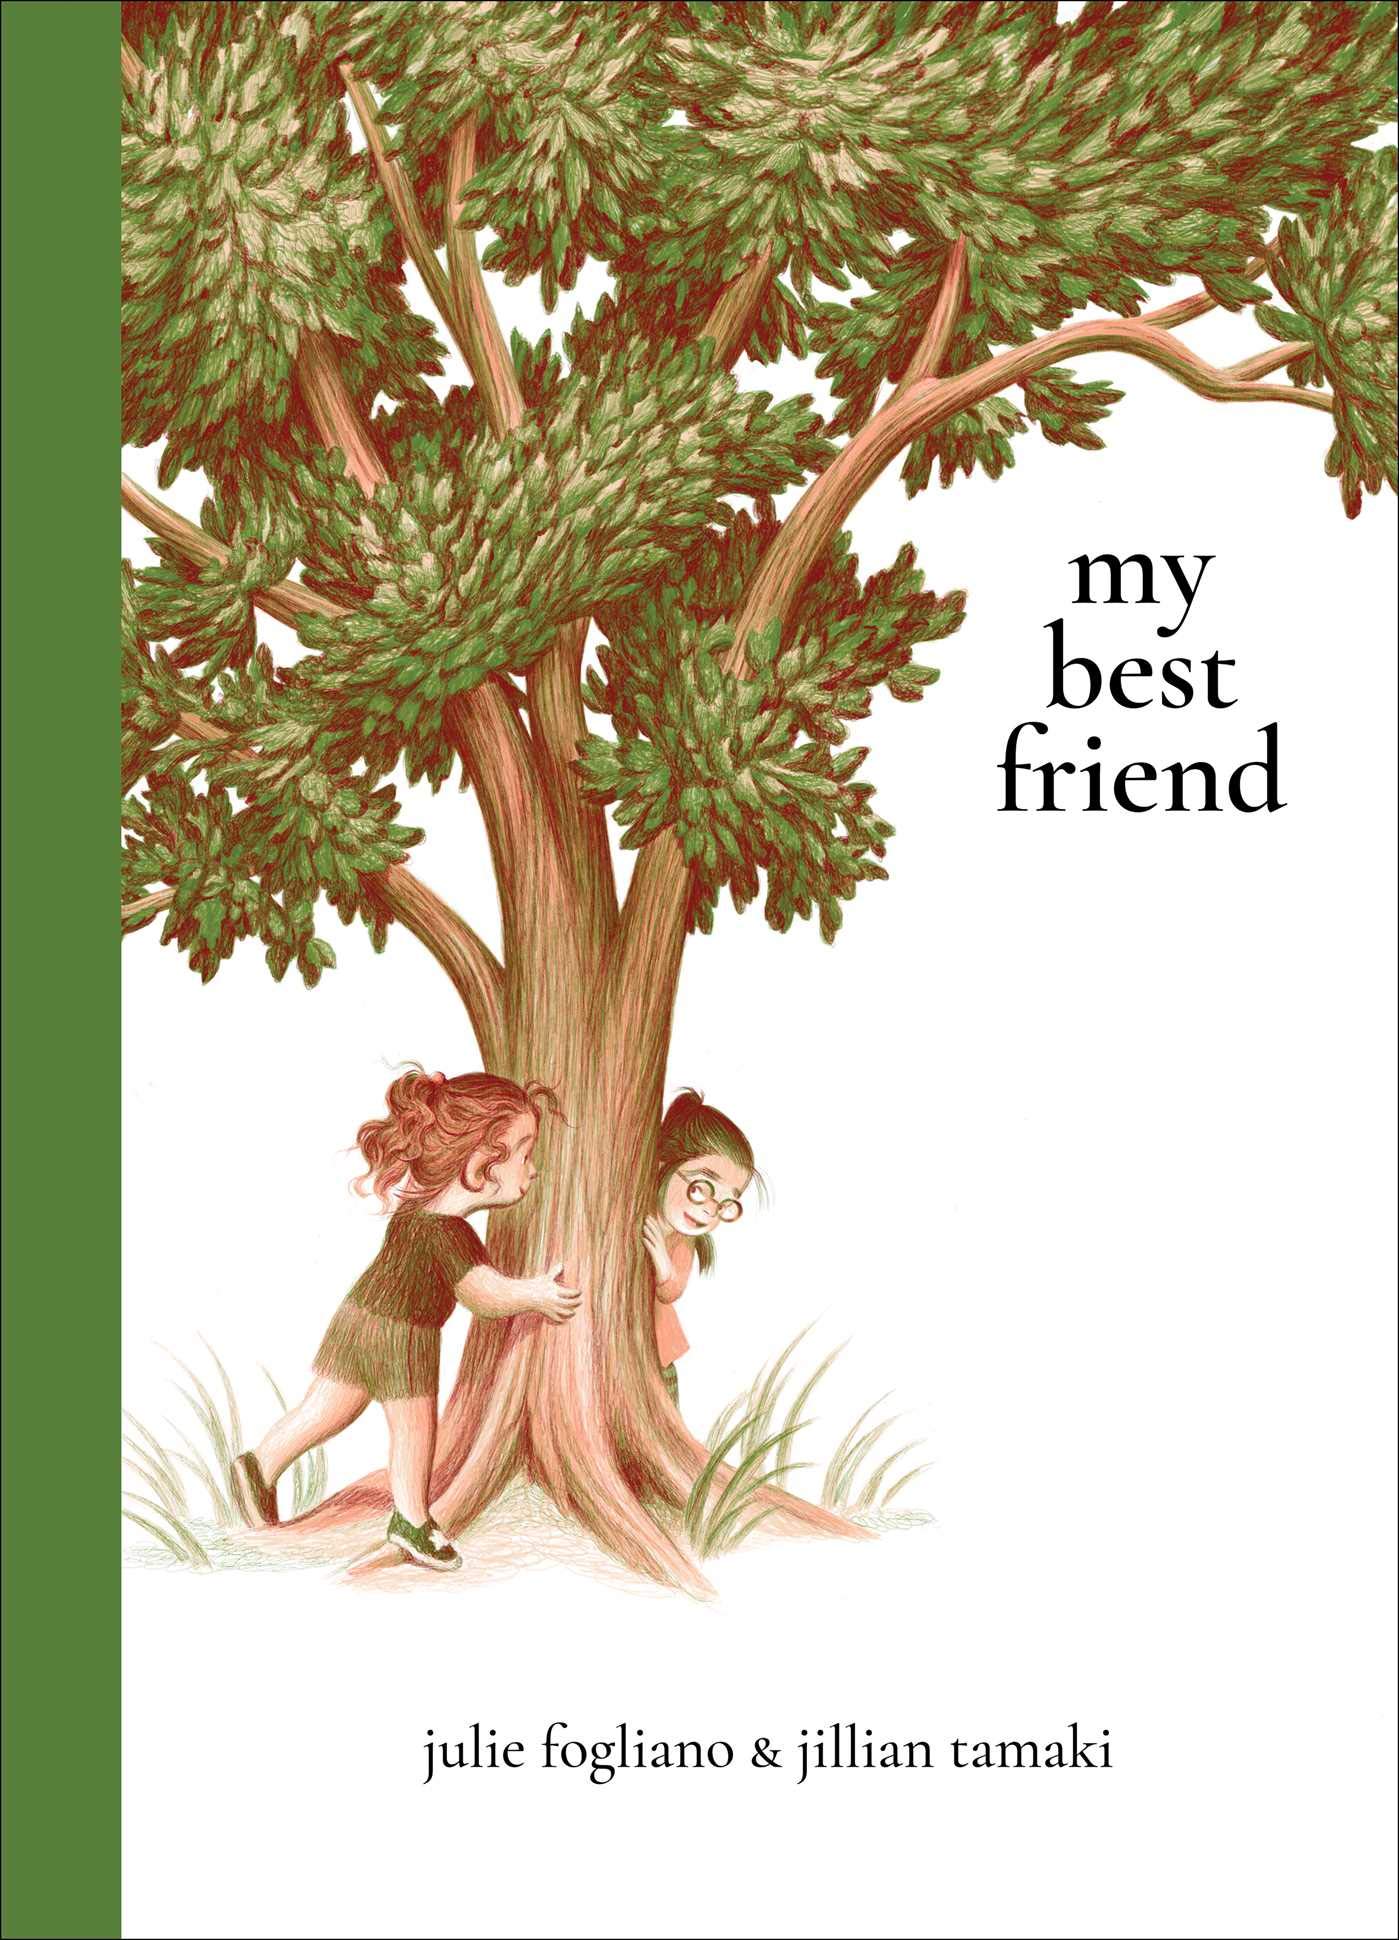 "My Best Friend" book cover